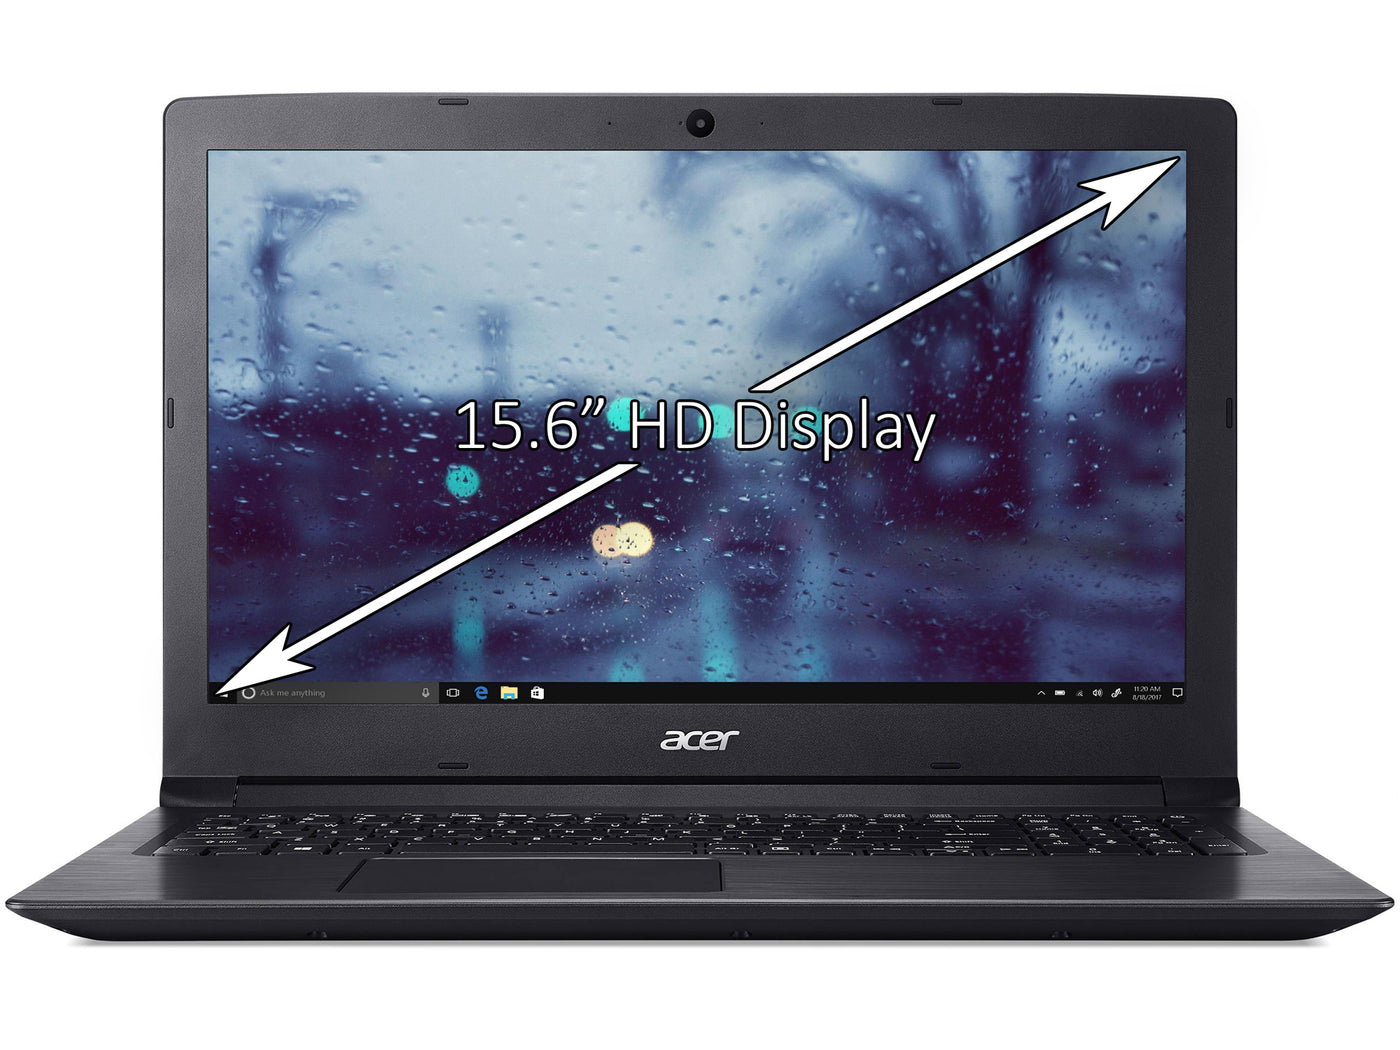 Refurbished Acer Aspire 3 A315 15.6